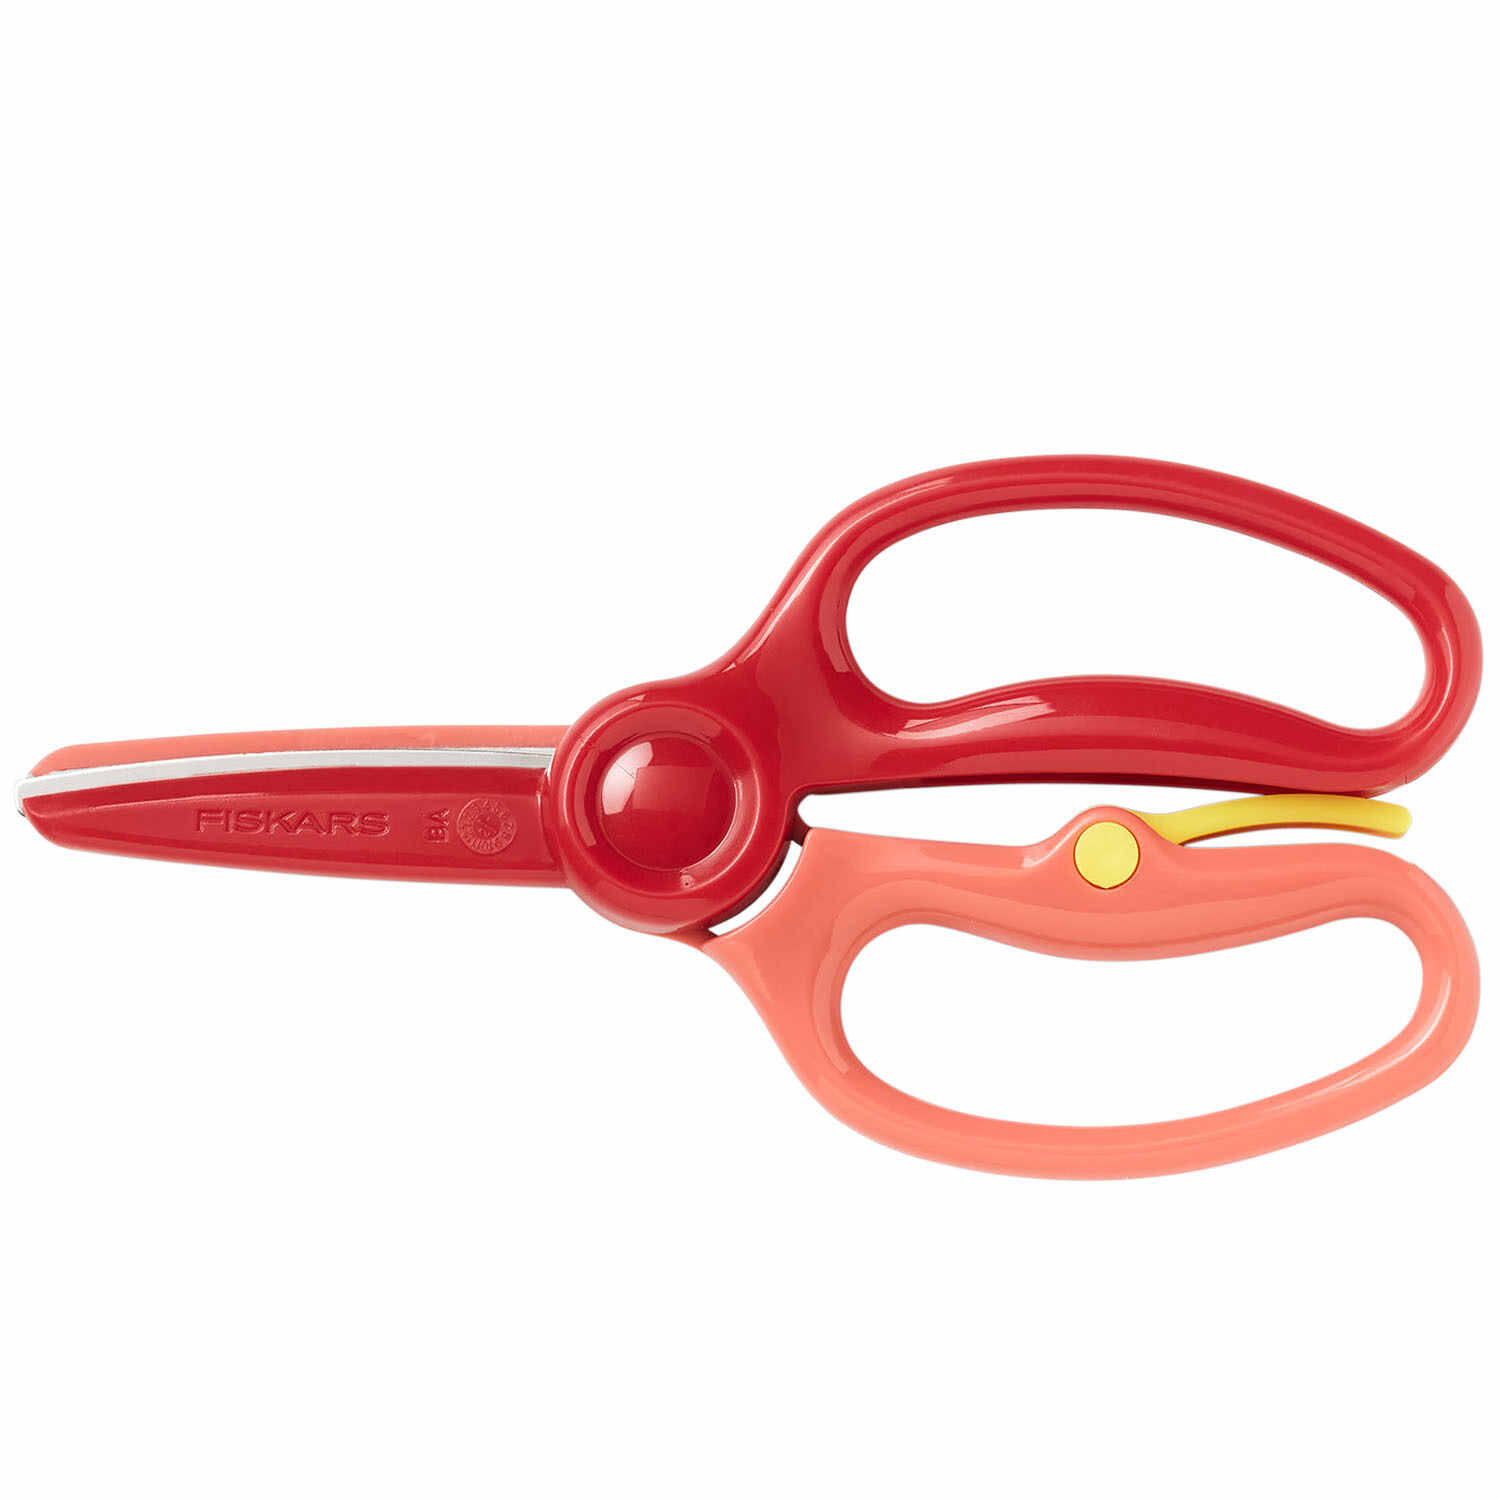 Kindergarten Scissors– Woodlark